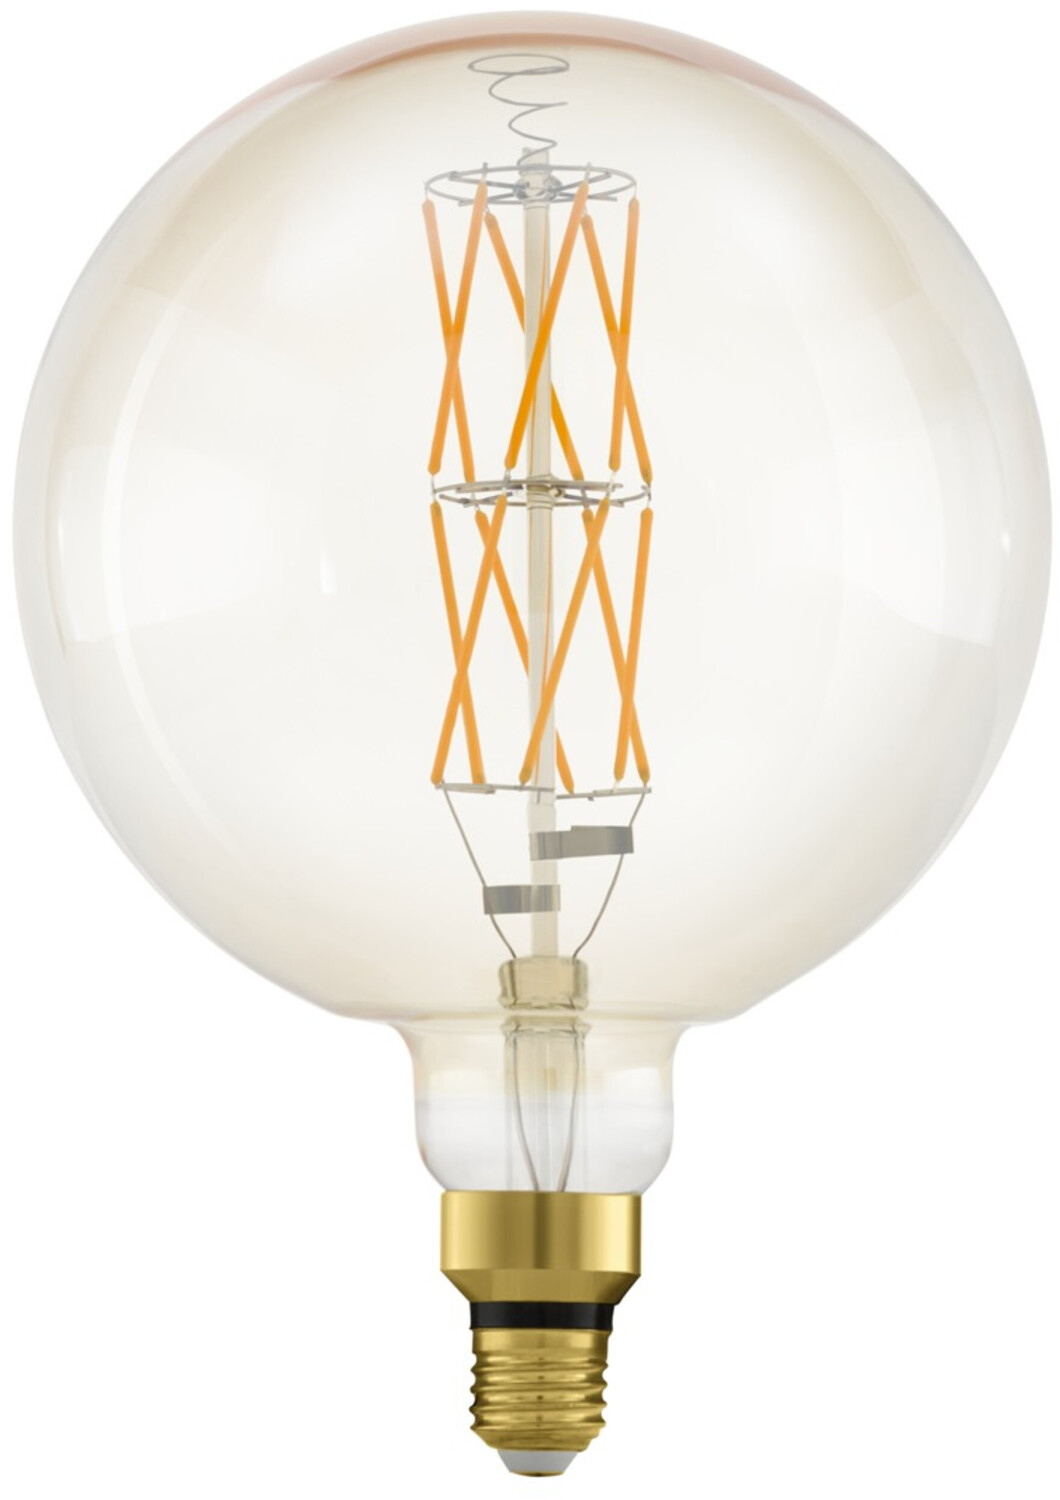 Eglo Big Size Vintage LED Globe ab bei 42,98 (11687) | Preisvergleich 8W(60W) E27 €